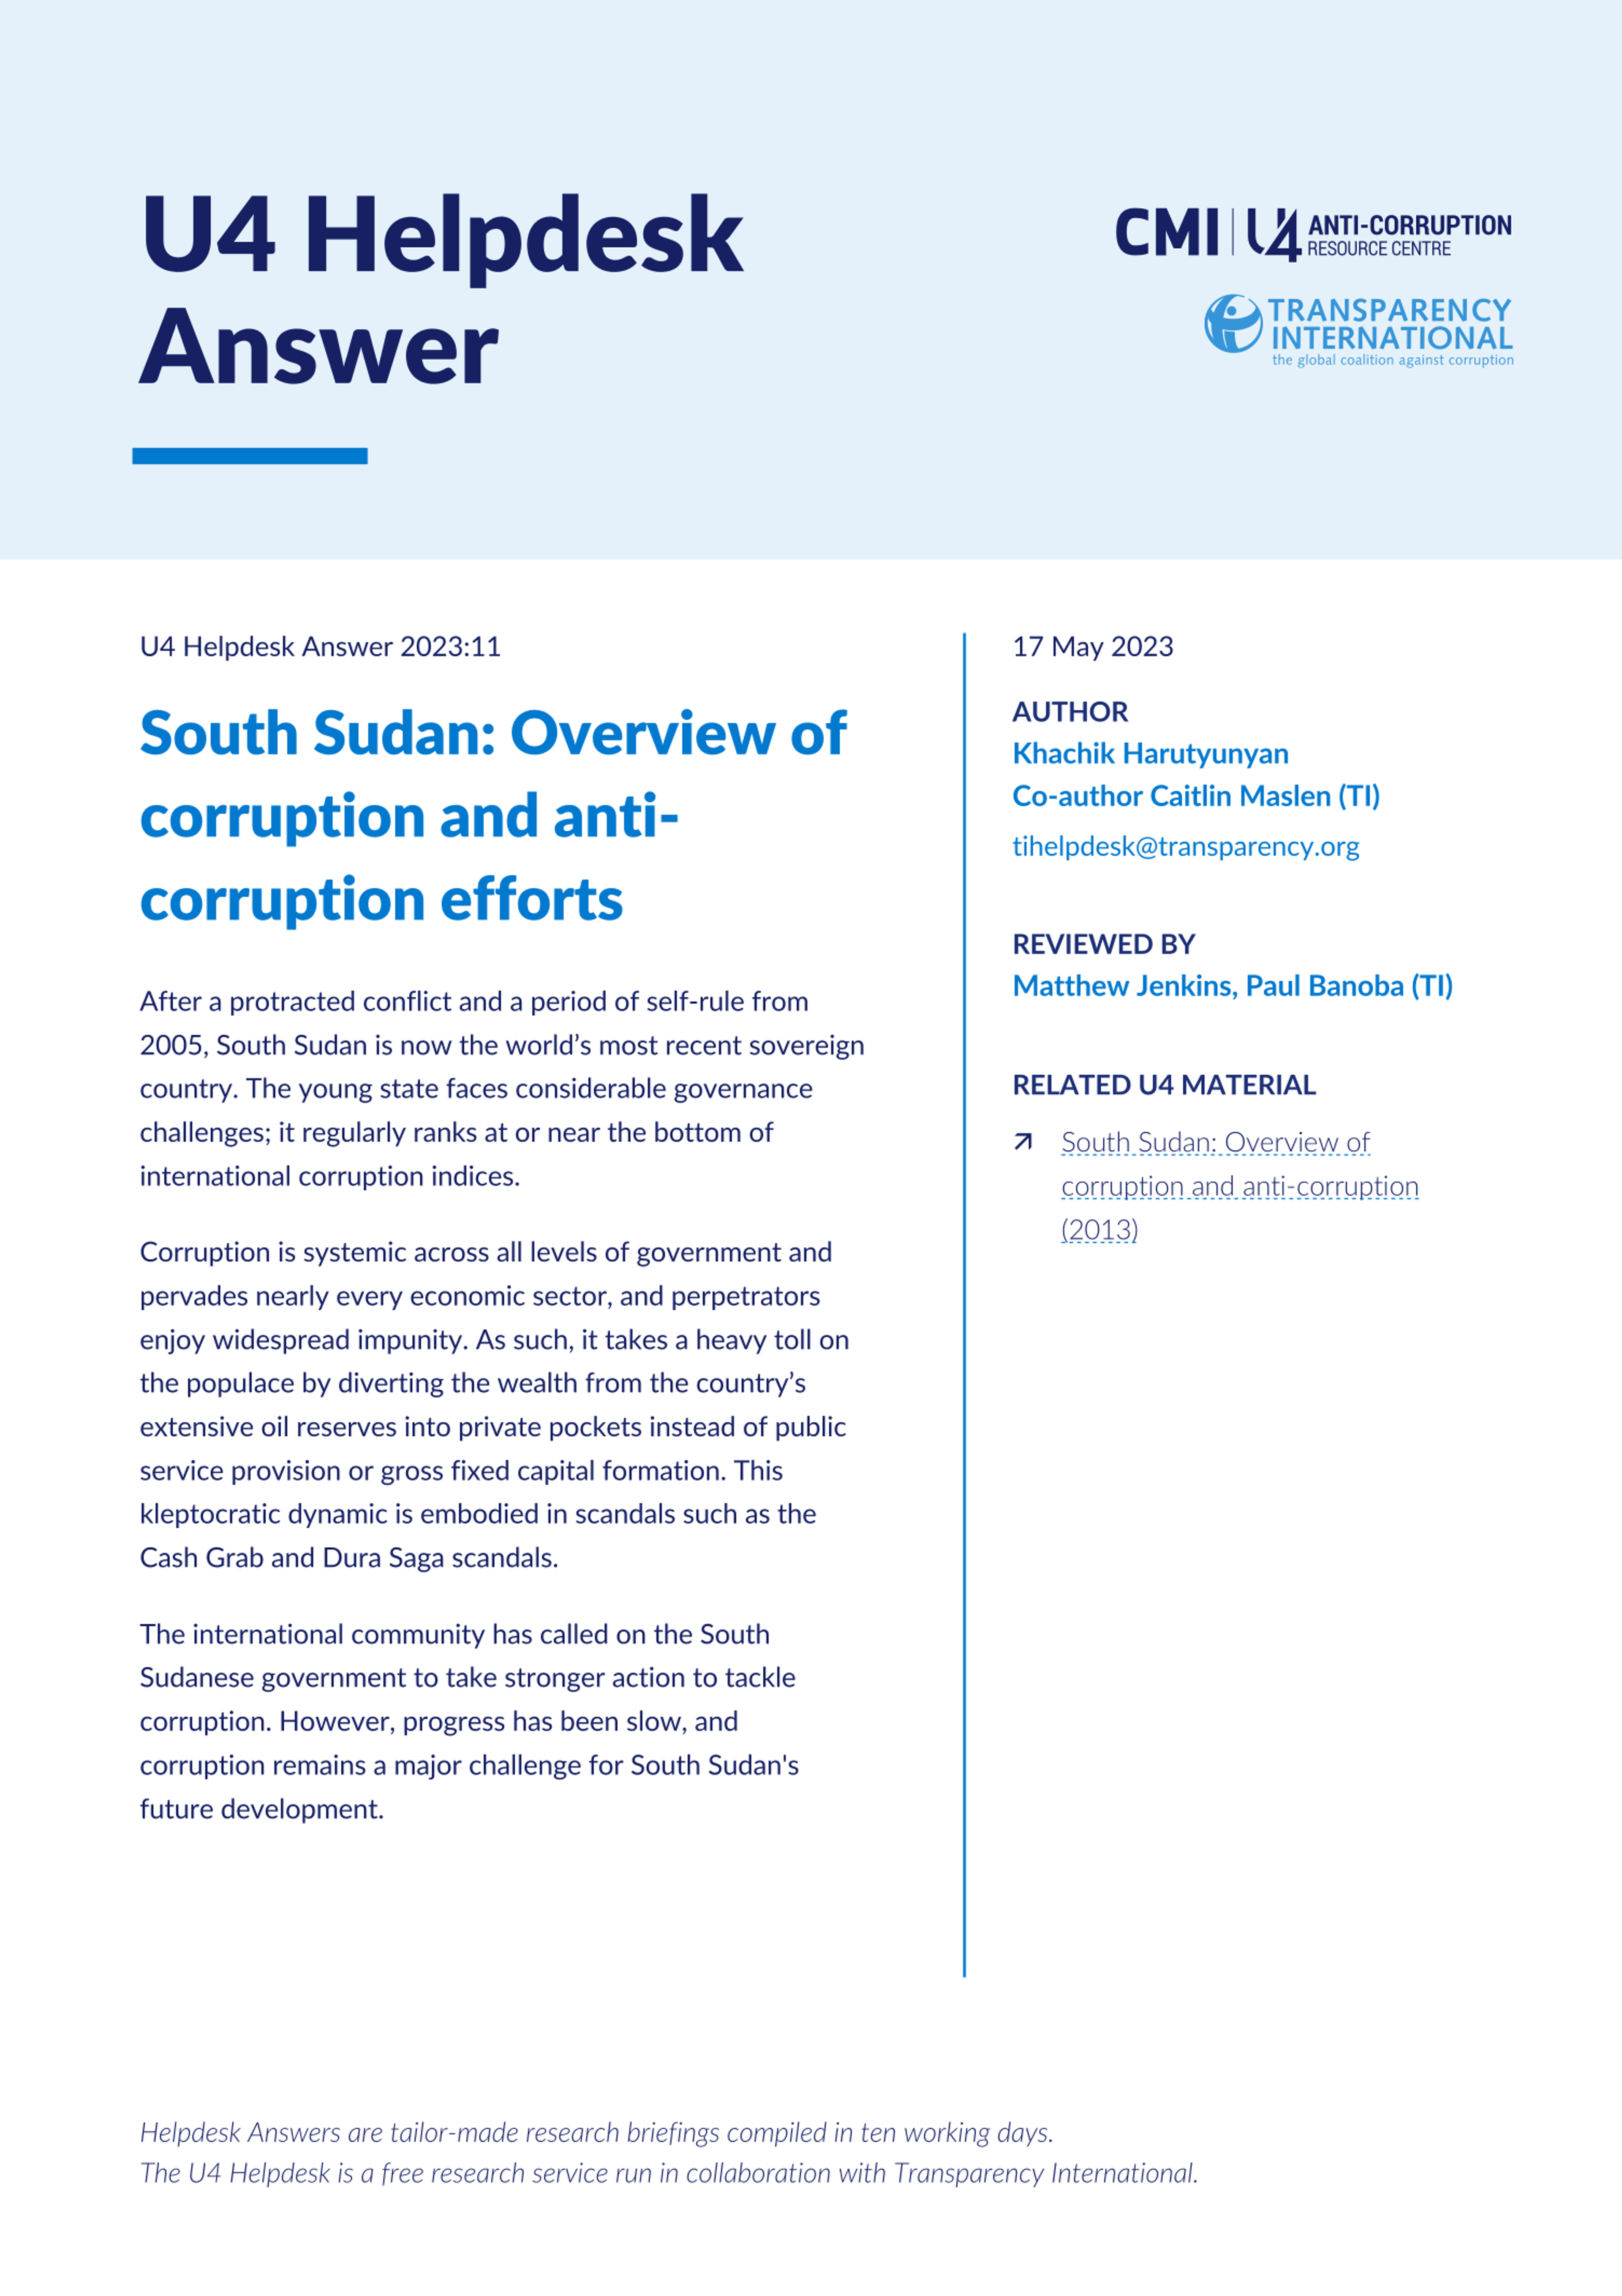 South Sudan: Corruption and anti-corruption